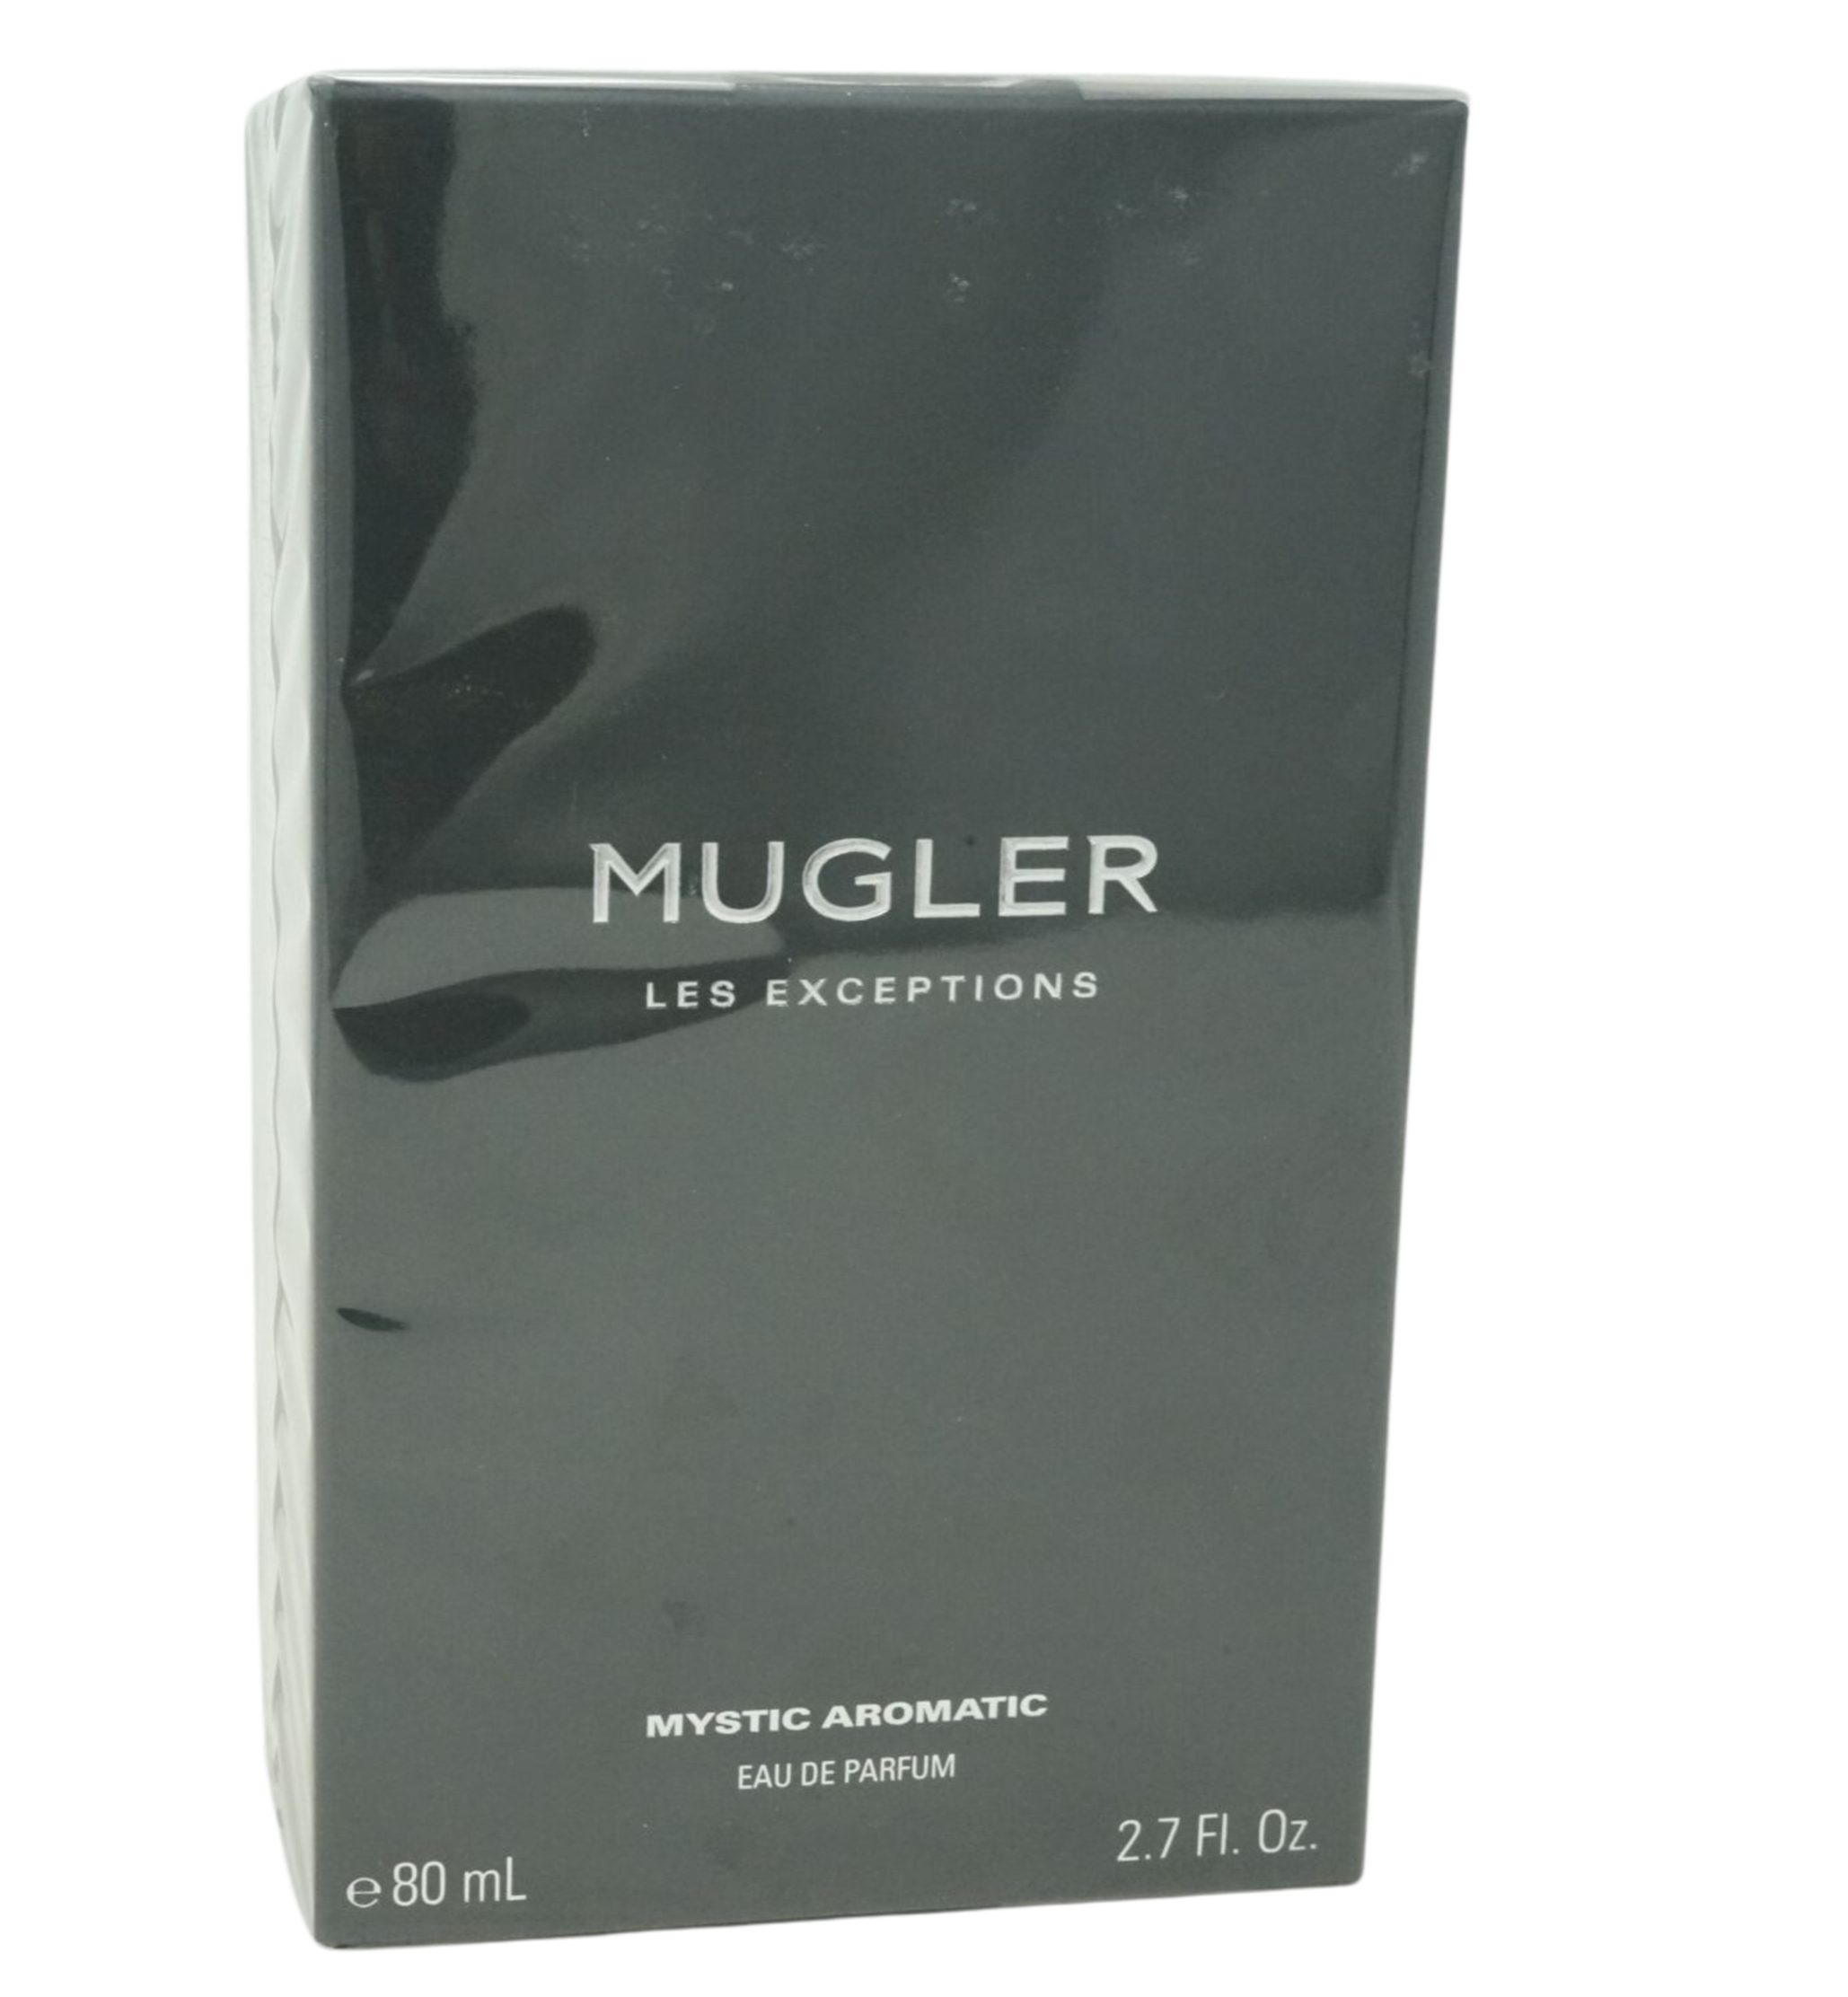 Thierry Mugler Eau de Parfum Thierry Mugler Les Exceptions Mystic Aromatic Eau de parfum 80ml